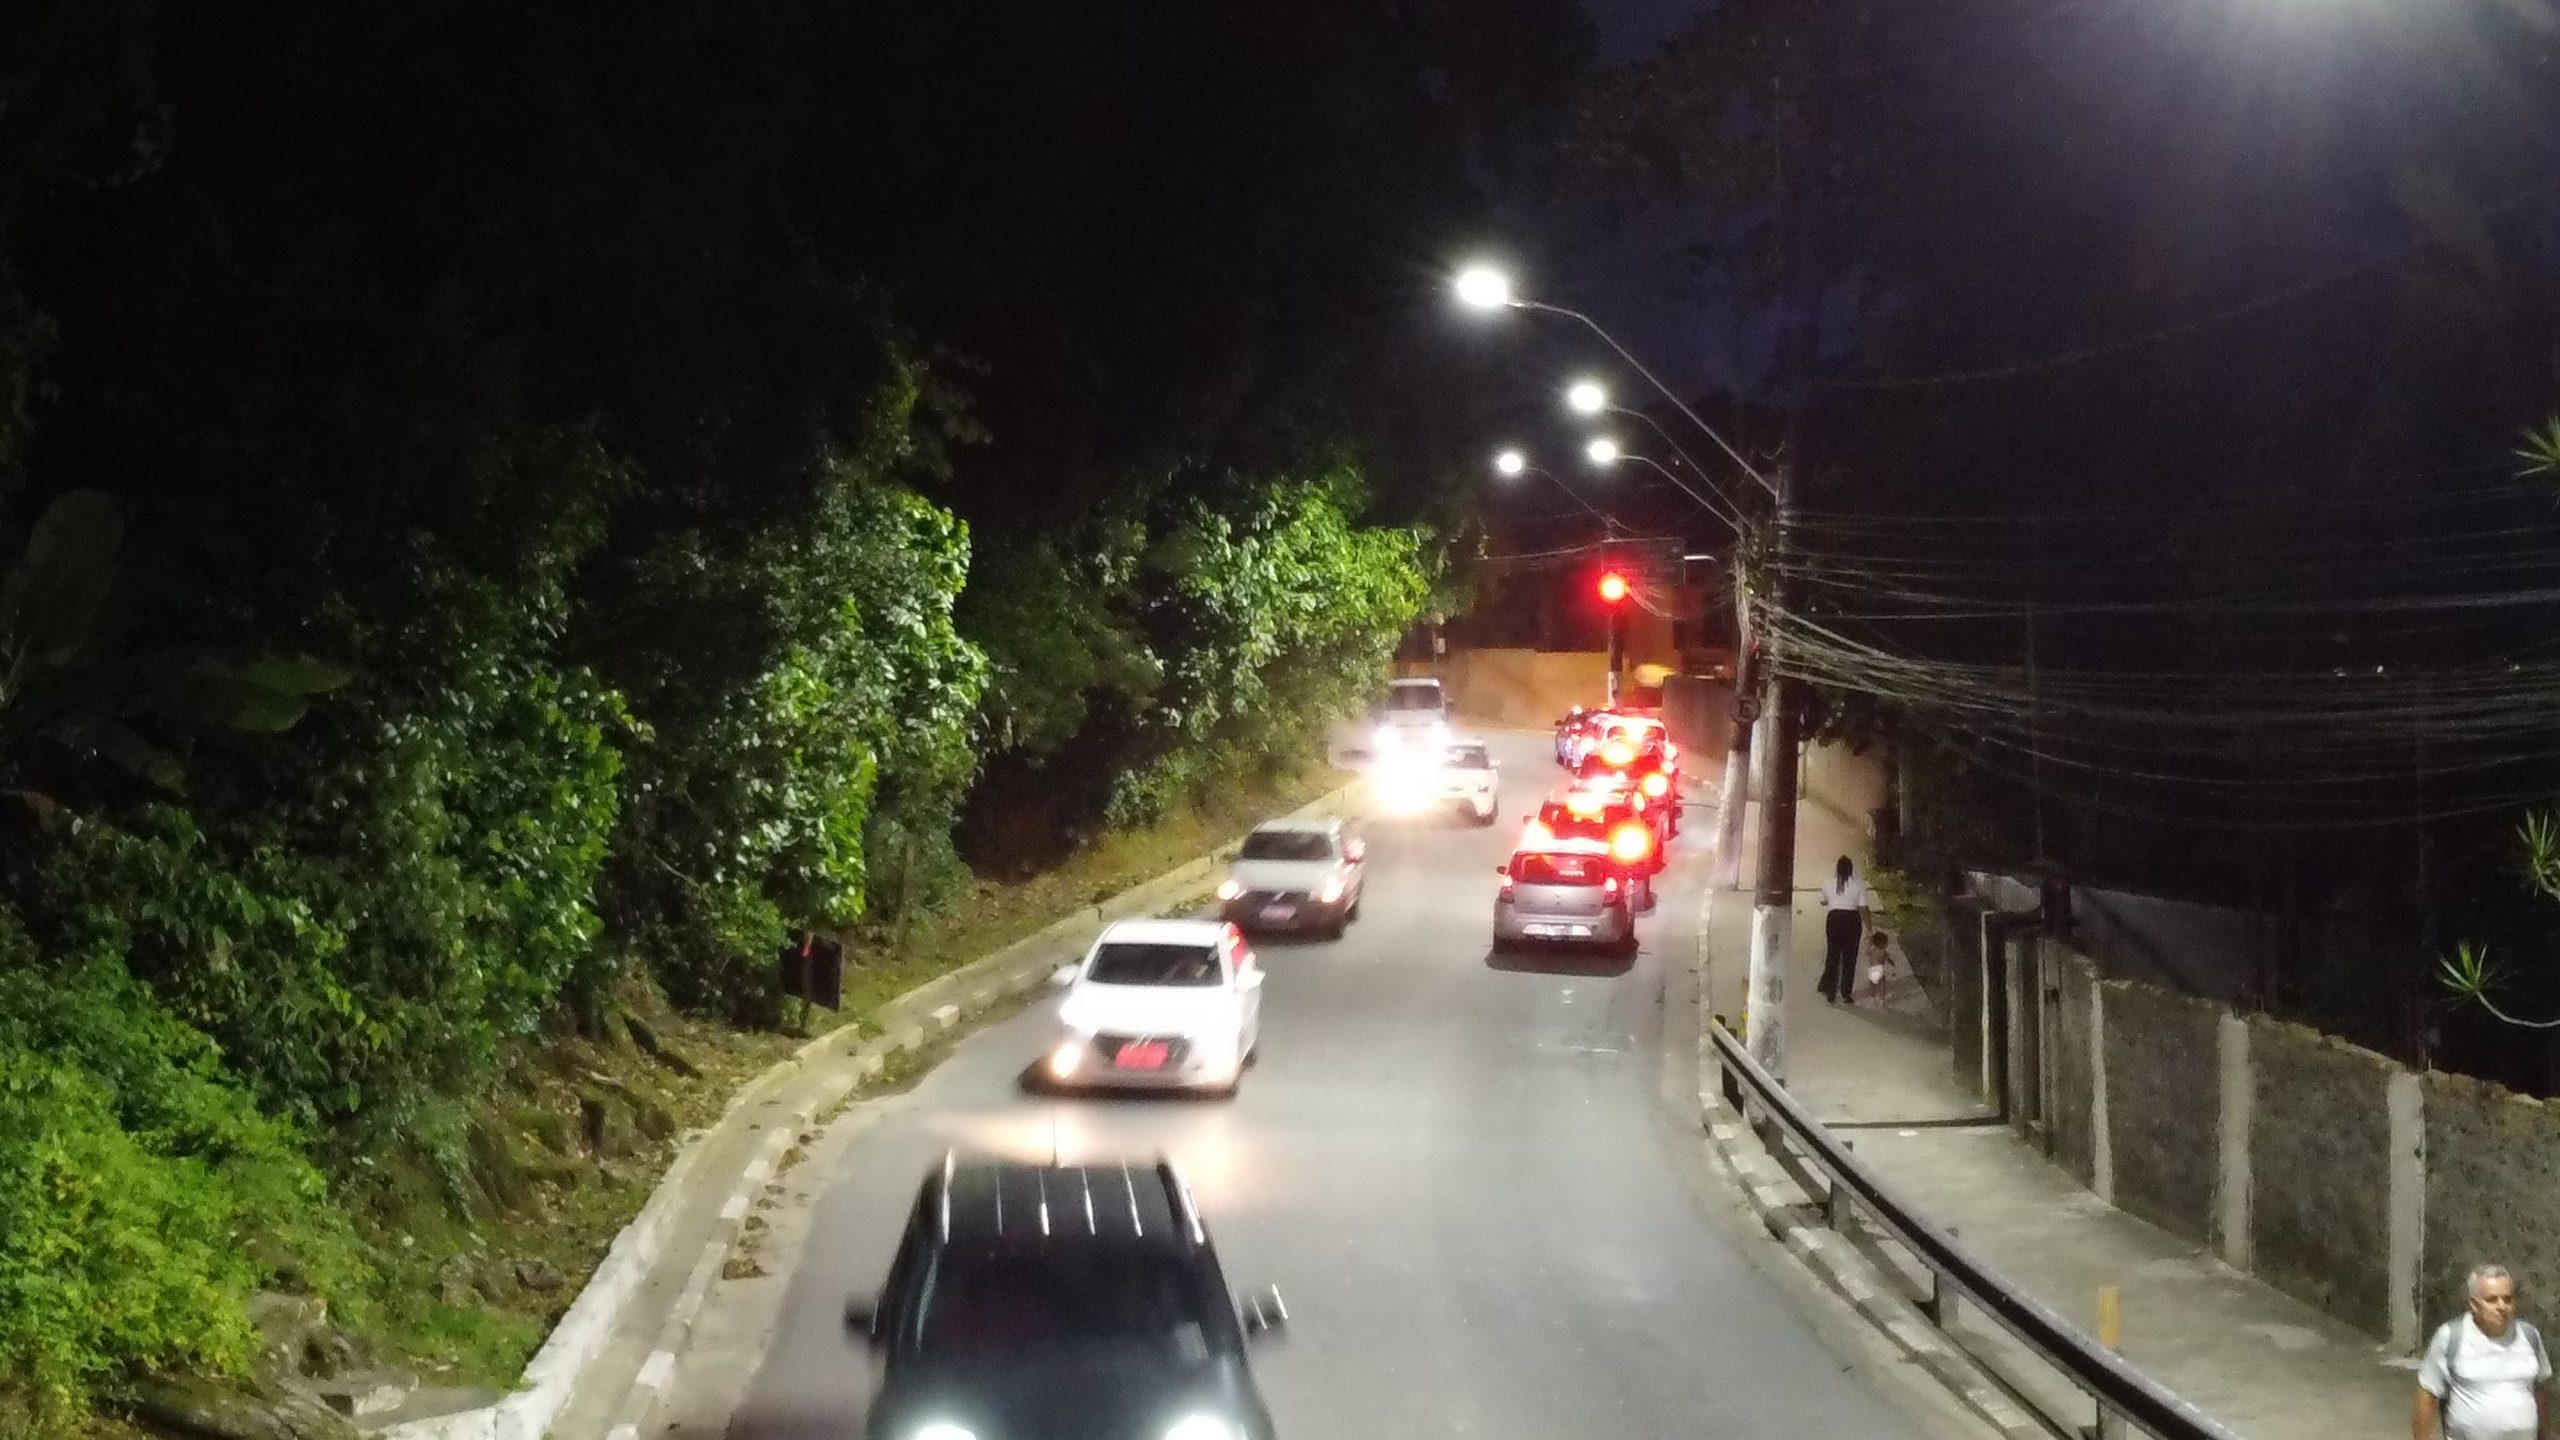 Santos investe em iluminação para melhorar segurança viária | Jornal da Orla